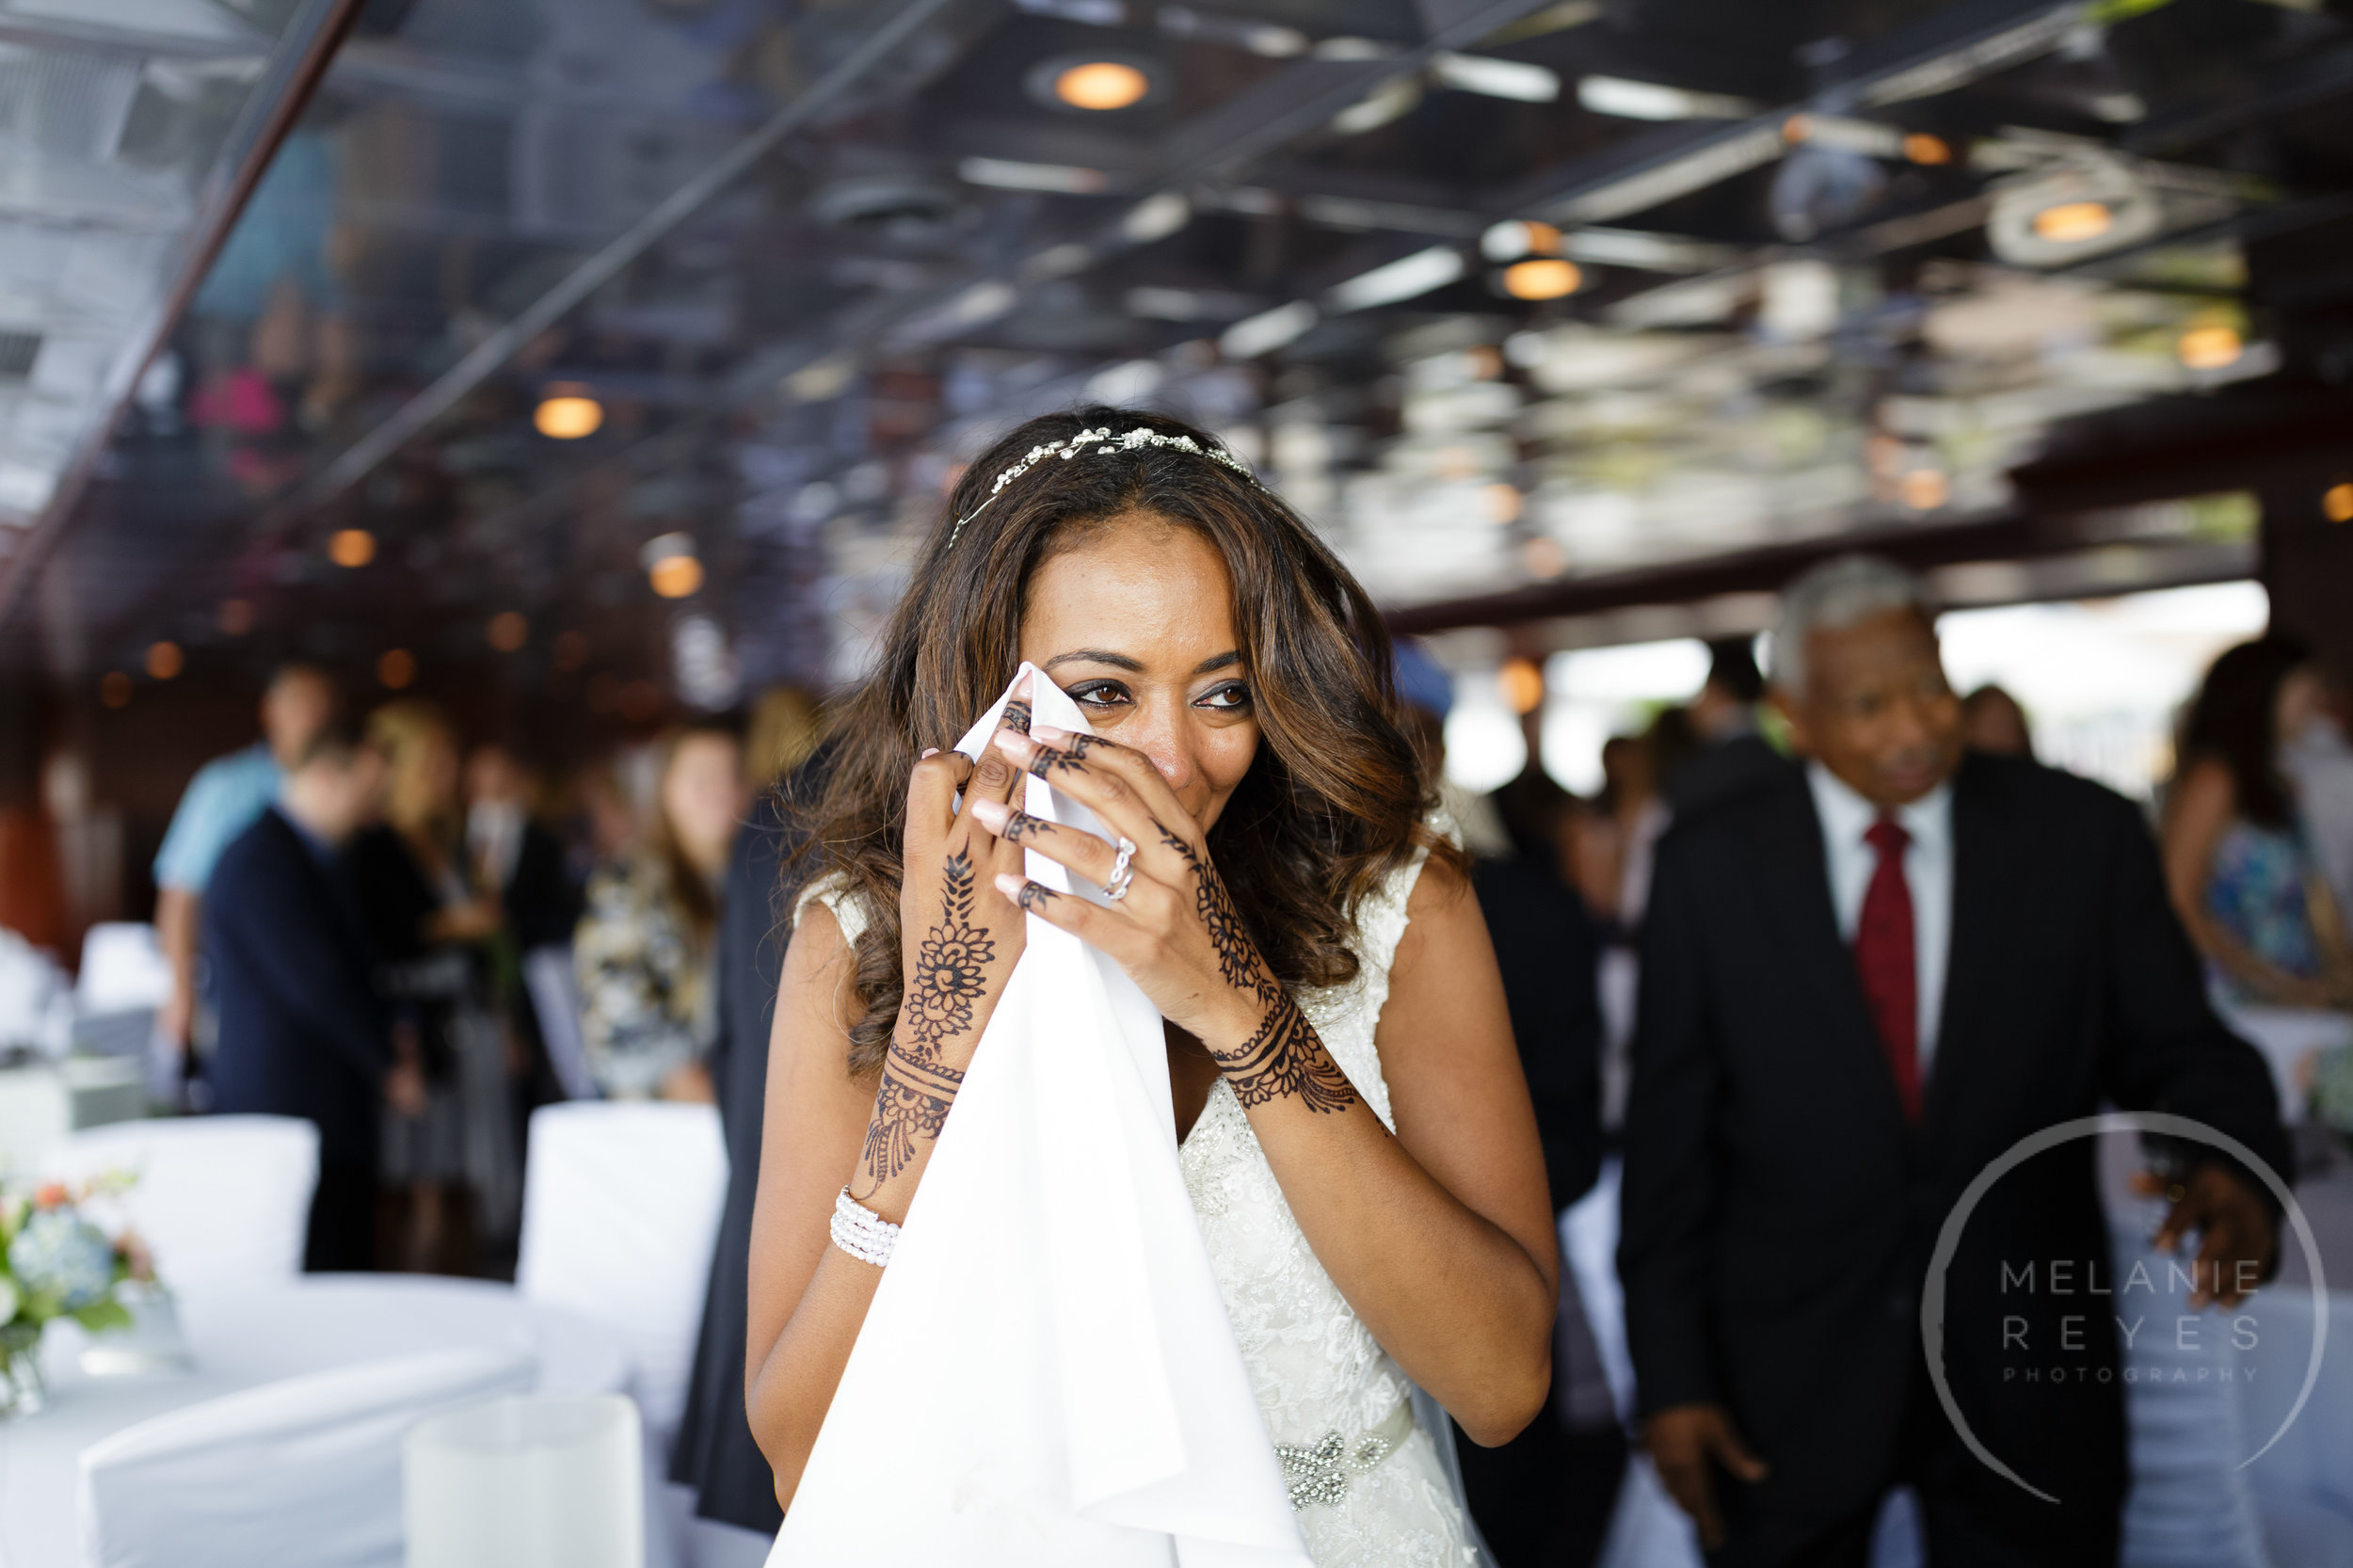 infinity_ovation_yacht_wedding_detroit_melaniereyes17.jpg